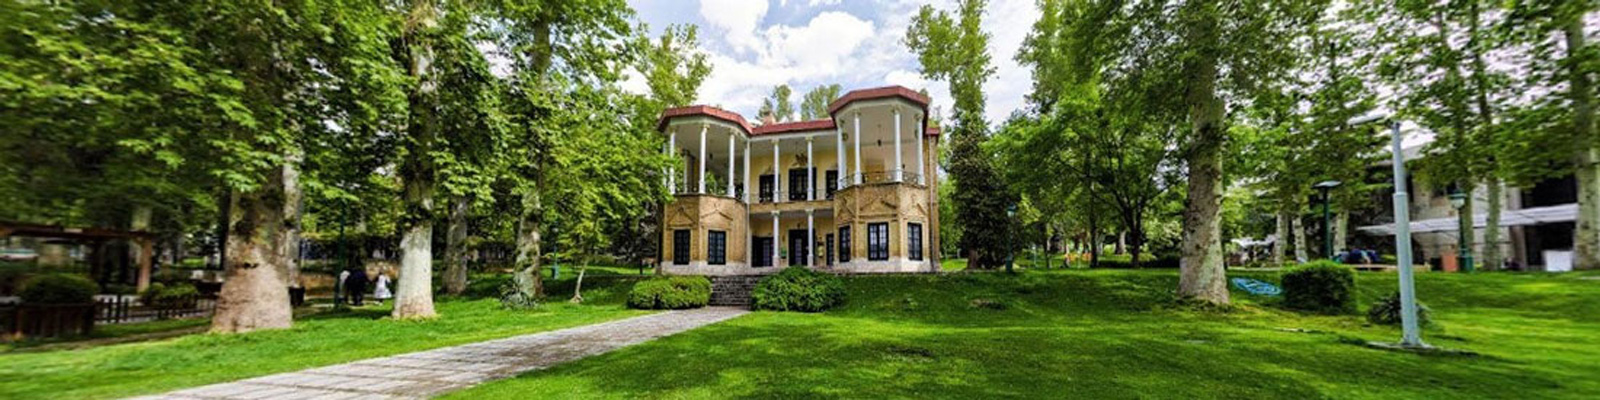 Niavaran-Palace-Complex-Ahmad Shahi Pavilion-Tehran-Province-Tehran